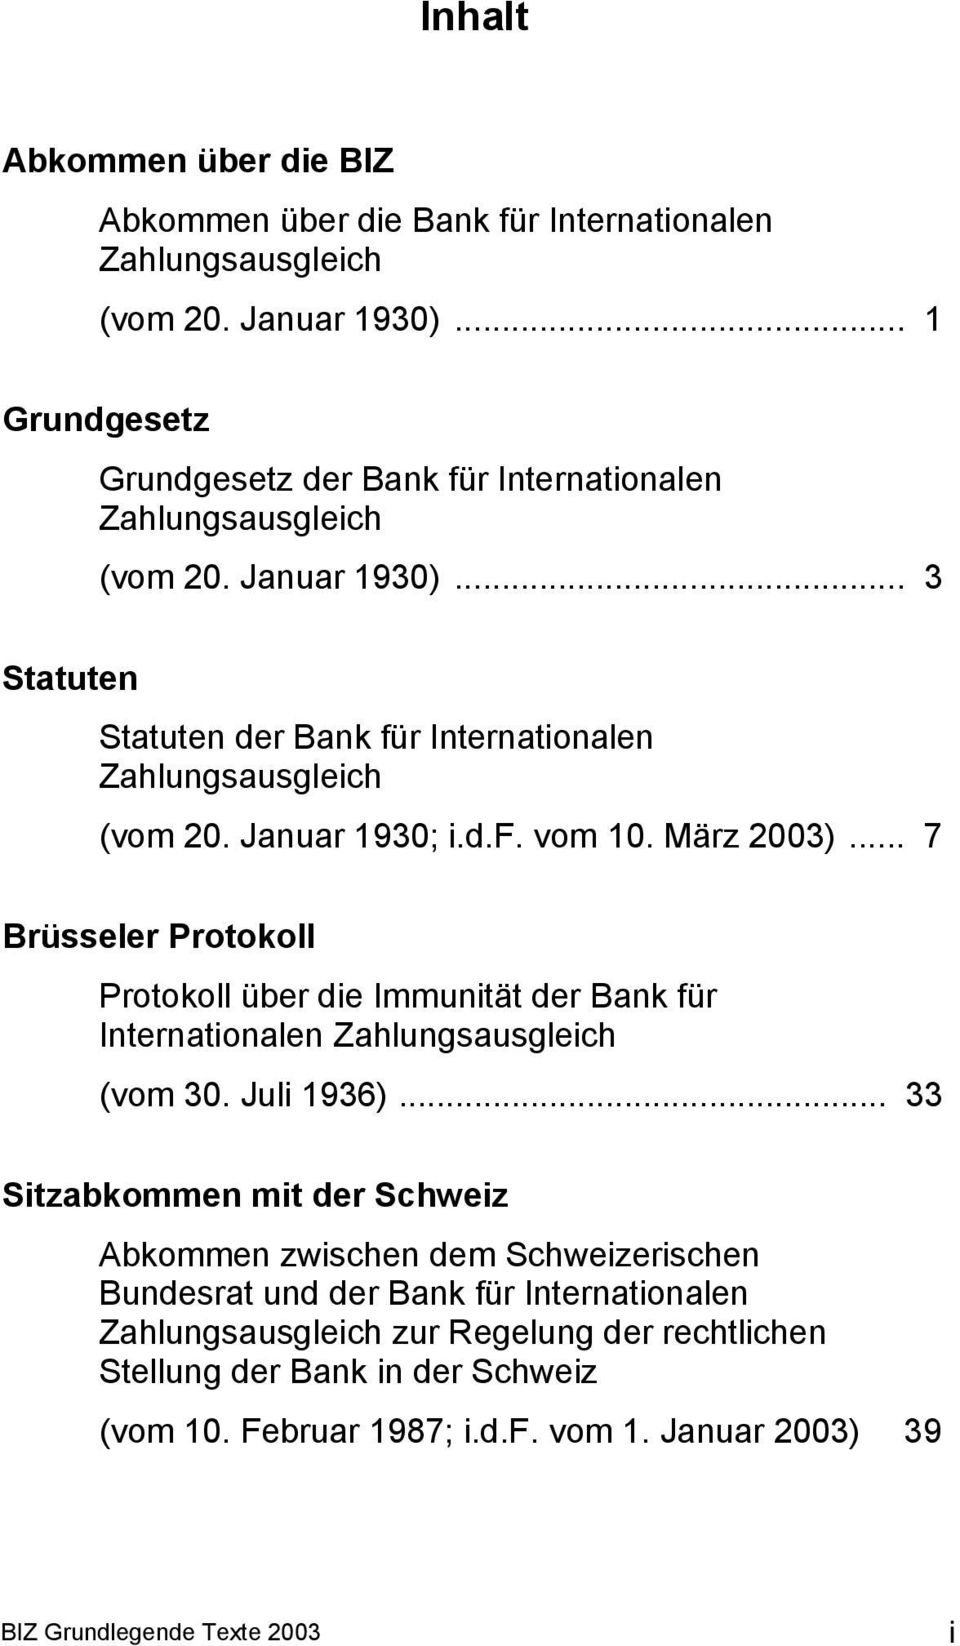 Januar 1930; i.d.f. vom 10. März 2003)... 7 Brüsseler Protokoll Protokoll über die Immunität der Bank für Internationalen Zahlungsausgleich (vom 30. Juli 1936).